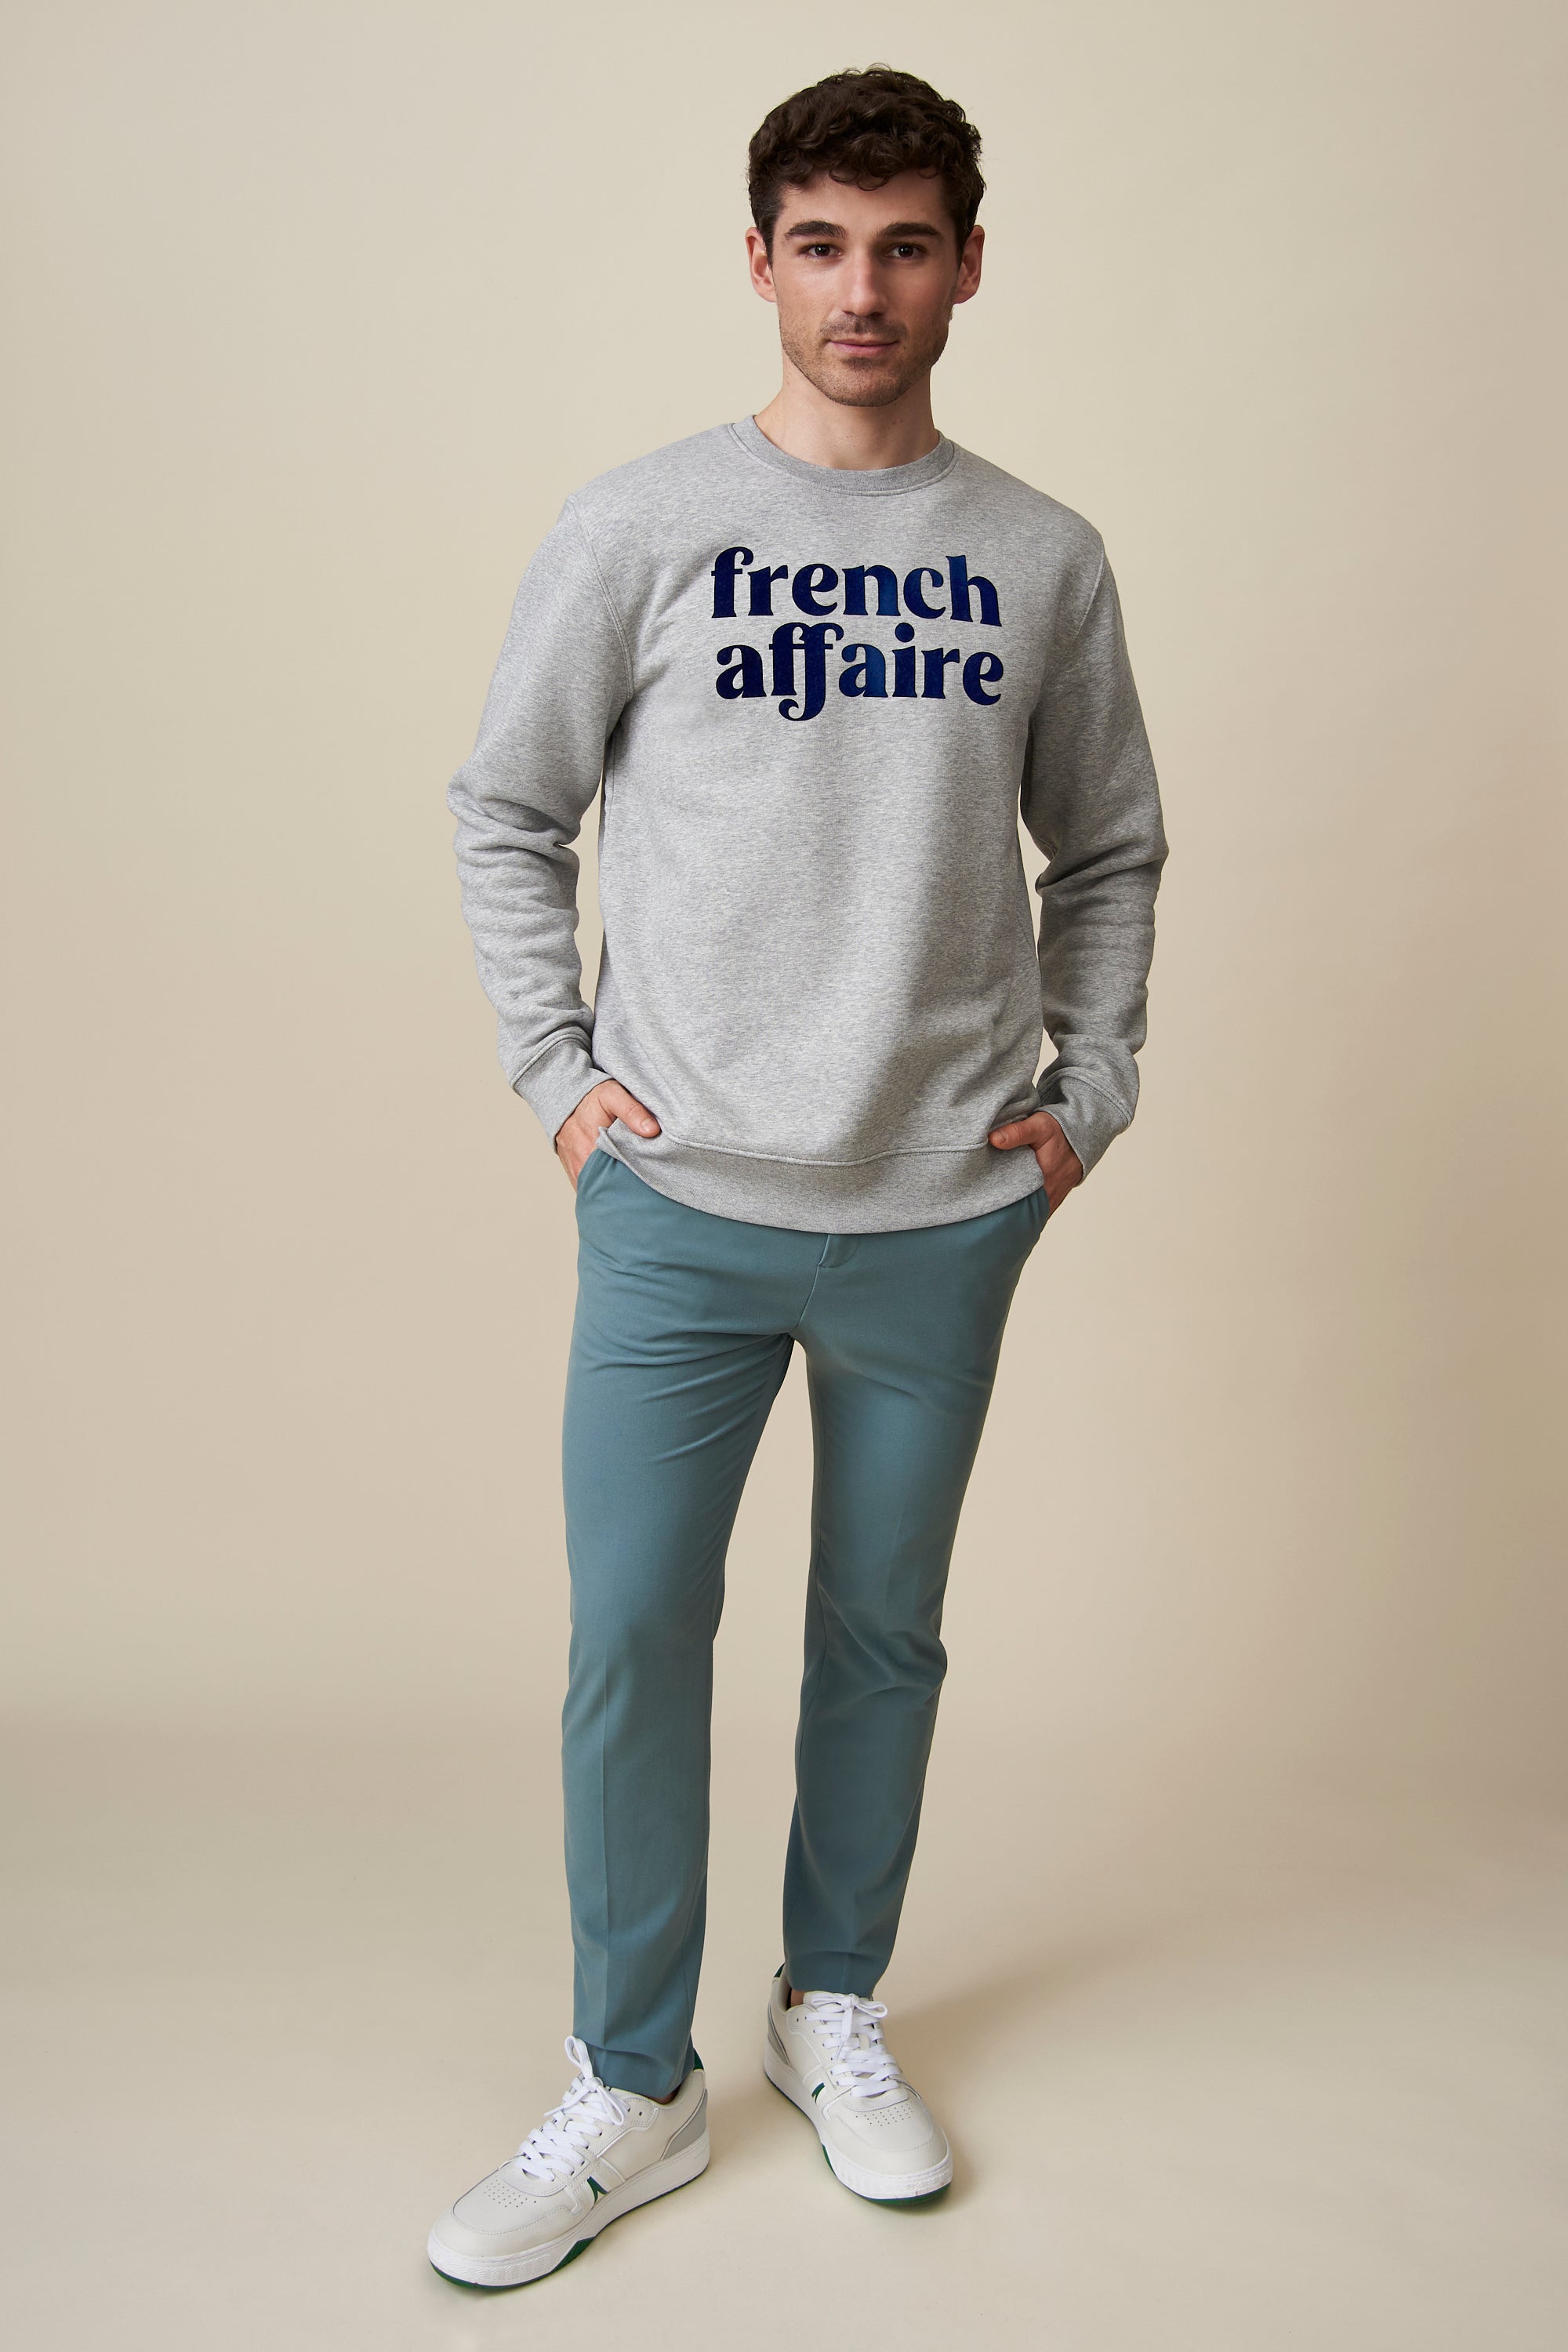 French Affaire Sweatshirt - Grau/Dunkelblau